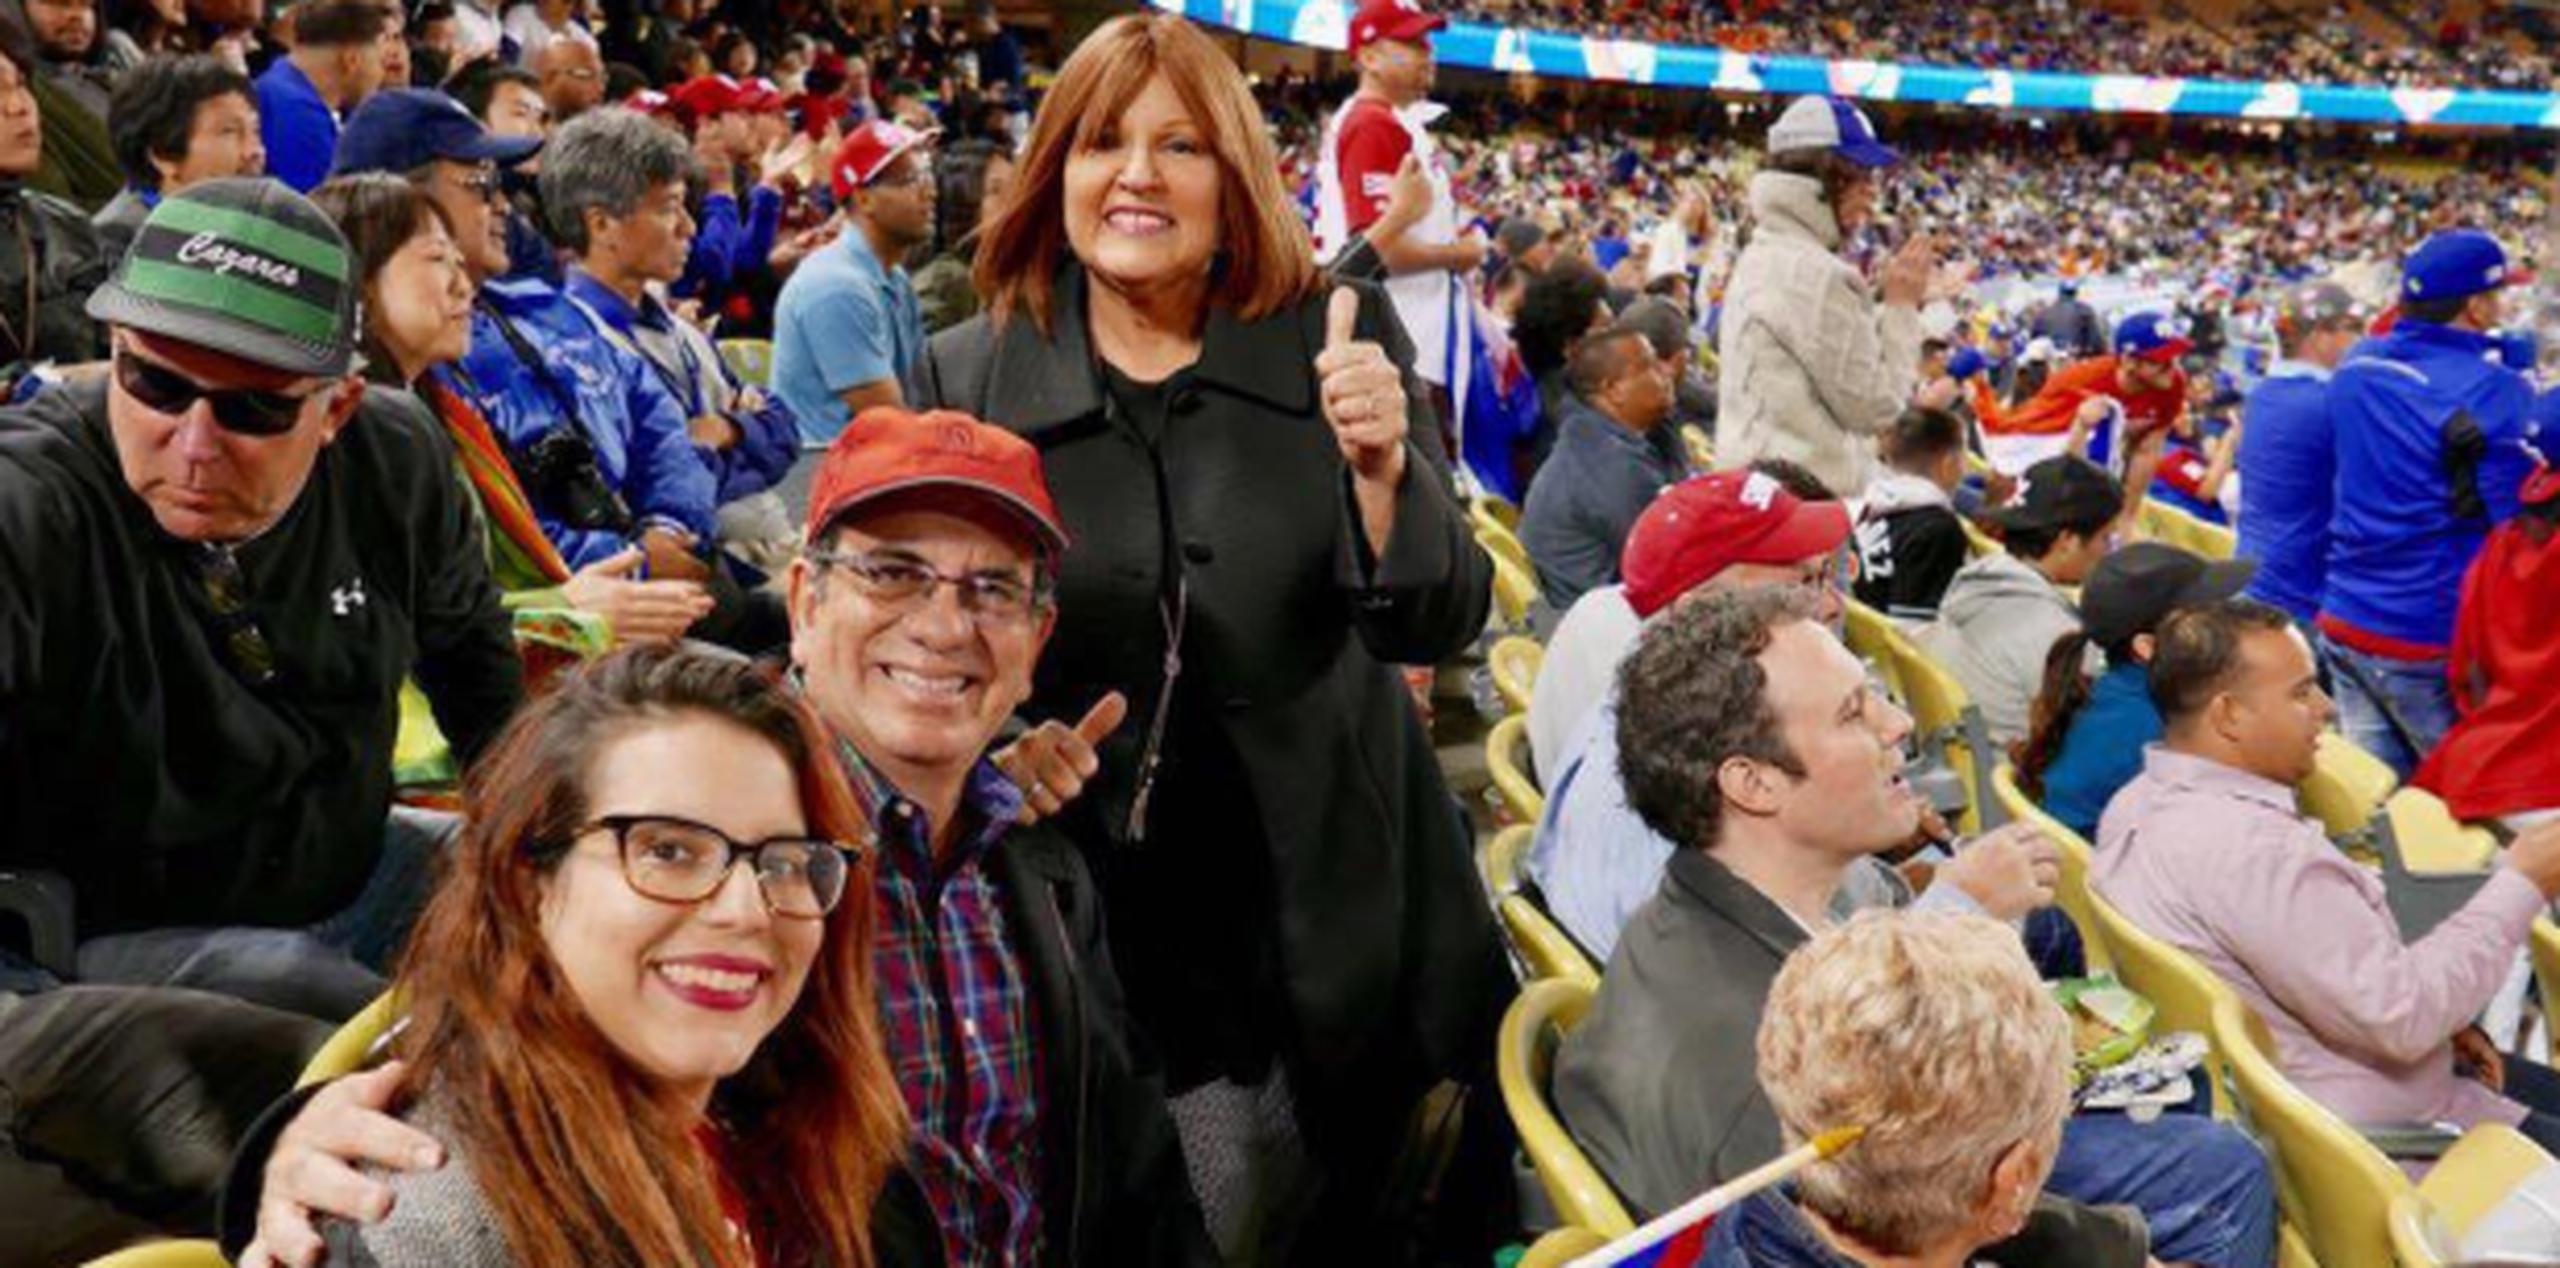 Gabriela recibió en Los Ángeles a sus padres, Aníbal Acevedo Vilá y Luisa “Piti” Gándara, para vitorear al equipo boricua en el Clásico Mundial de Béisbol. (Suministrada)